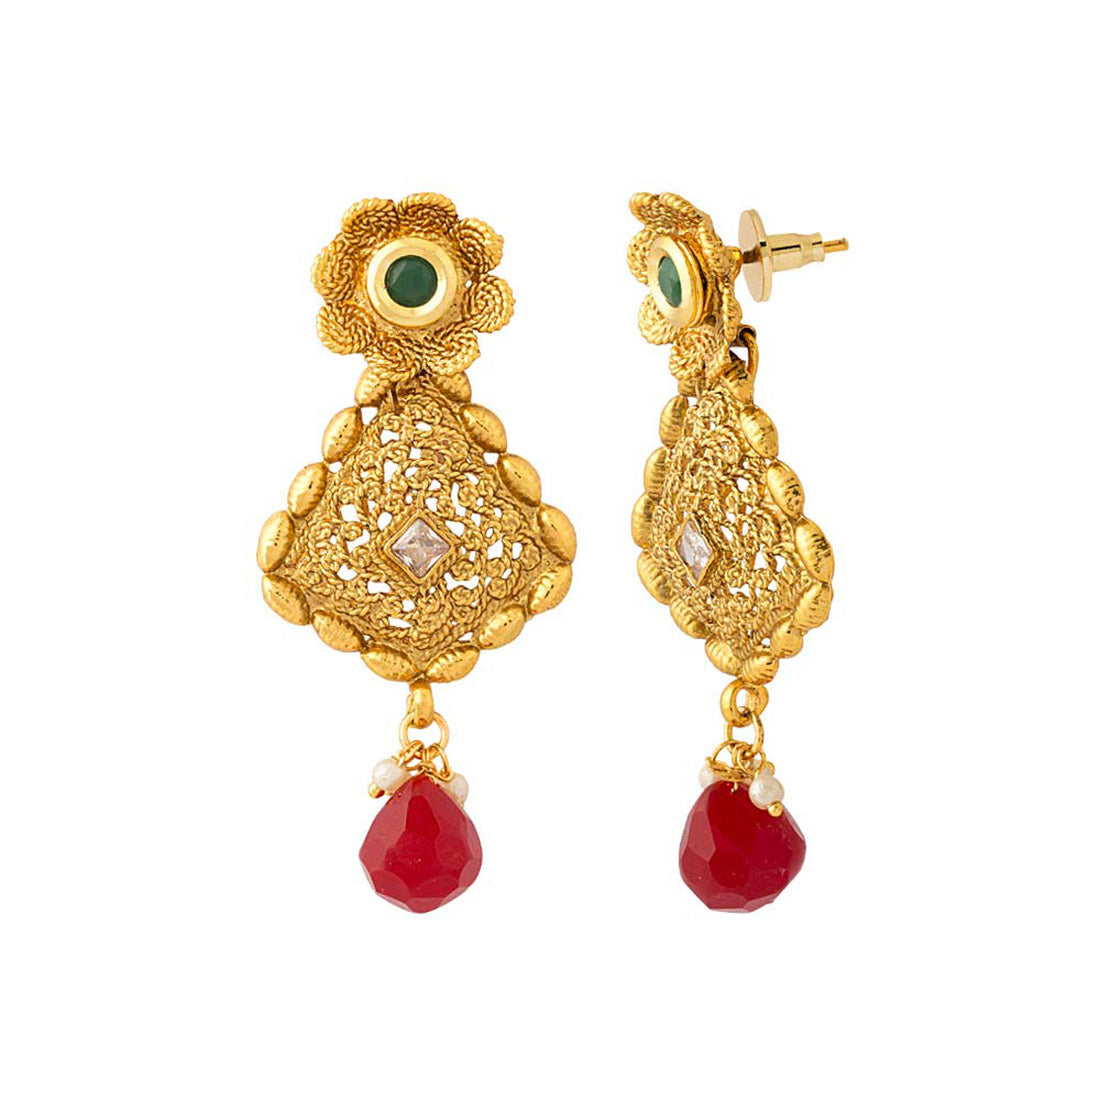 Designer Gold Plated earrings